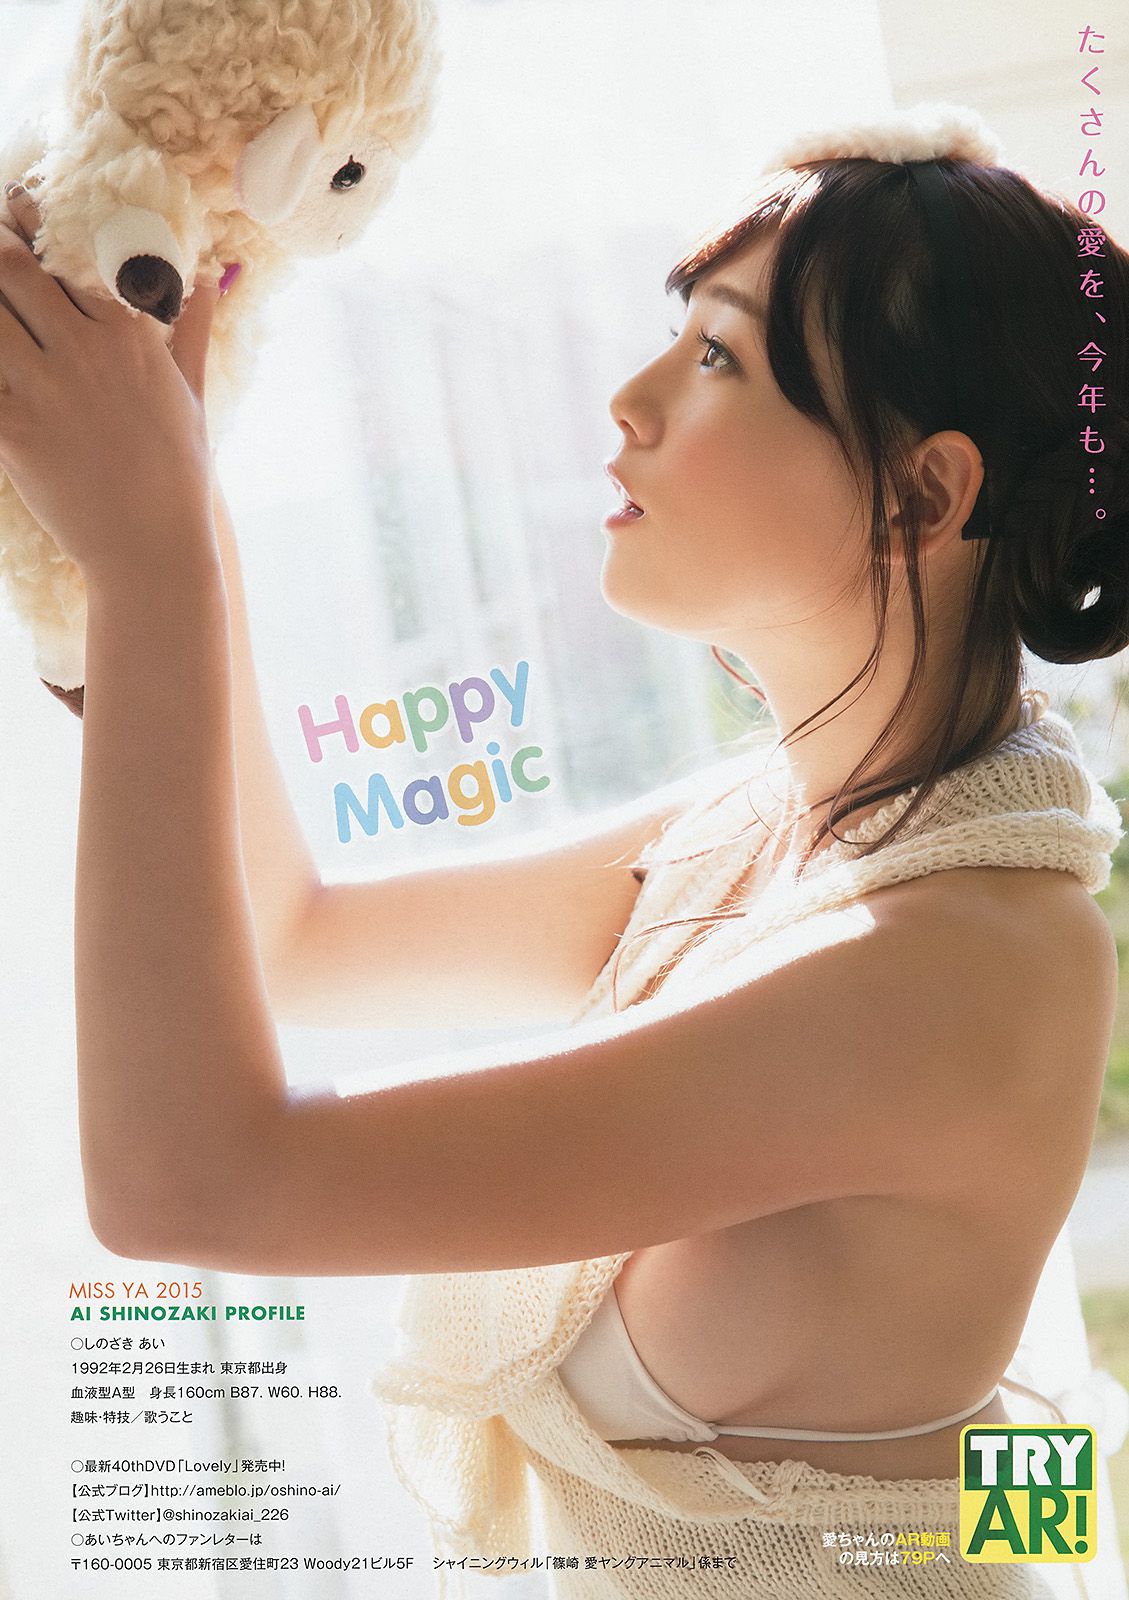 Ai Shinozaki Kaneko Shiori Minato Riku [Young Animal Arashi 岚 Special Edition] No.09 2015 Photograph Page 12 No.4ddbec